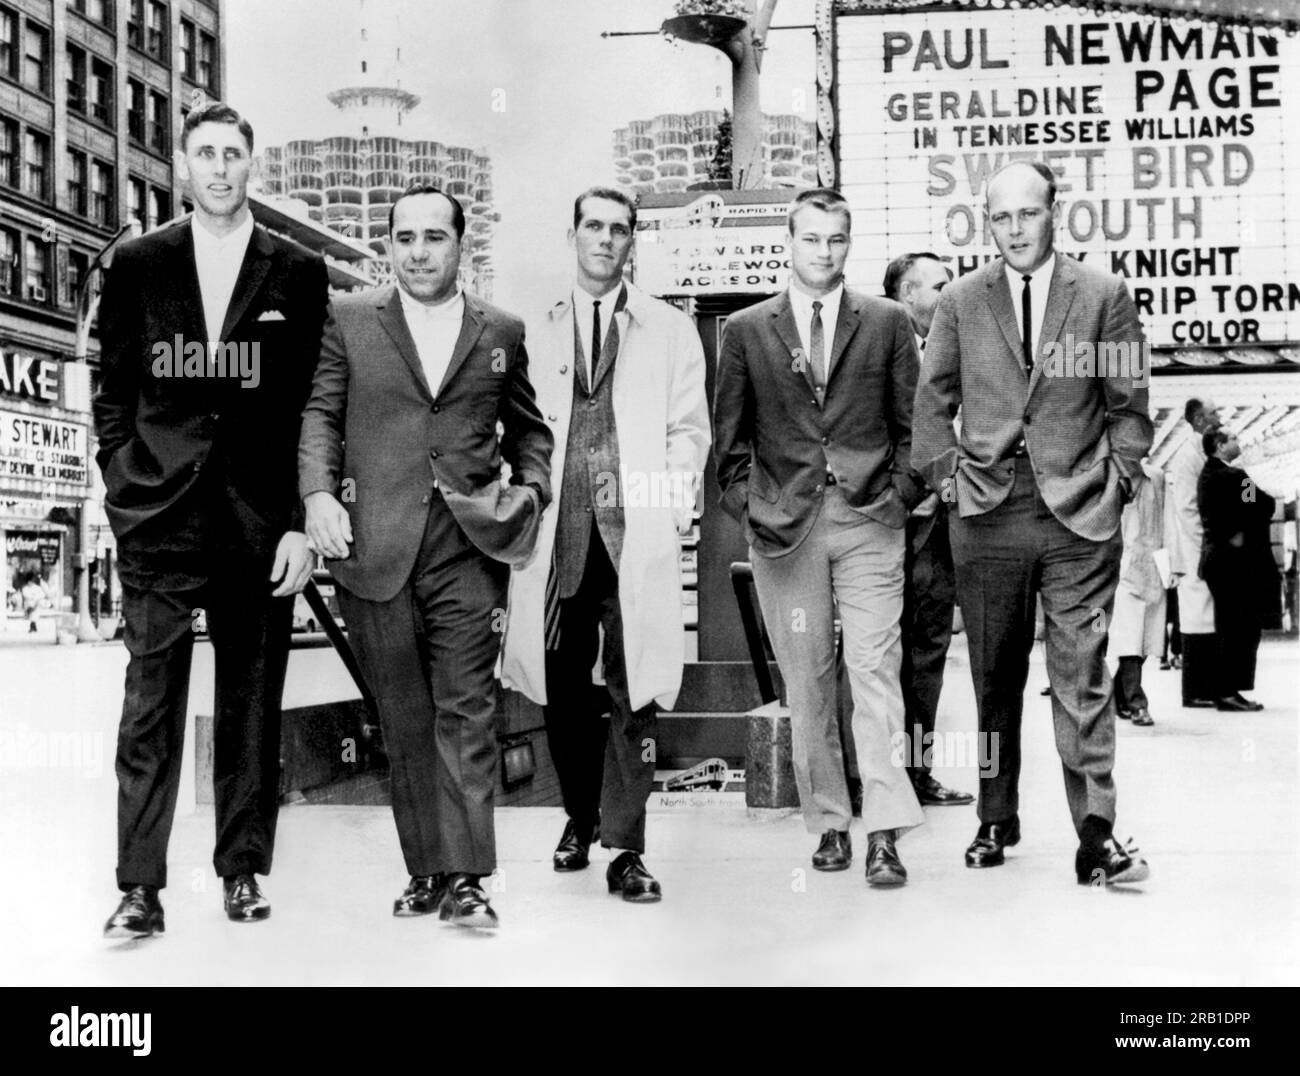 Chicago, Illinois : 2 mai 1962 les joueurs des Yankees de New York à la recherche de détente pendant leur série contre les White Sox marchent sur State Street en route pour un film. De gauche à droite : Jim Coates, Yogi Berra, Phil Linz, Jim Boulton et Bud Daley. Banque D'Images